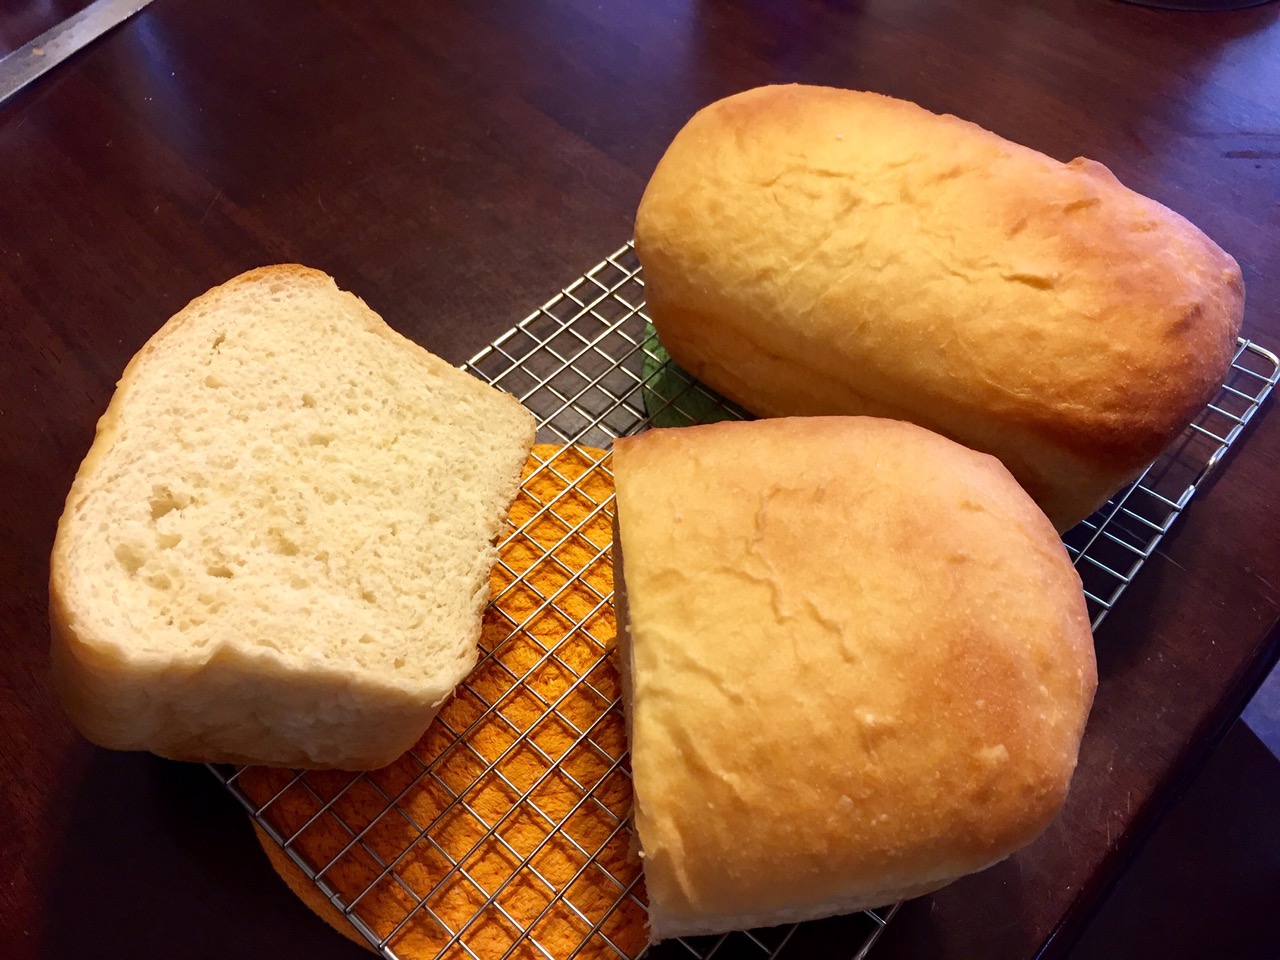 Sourdough Bread I